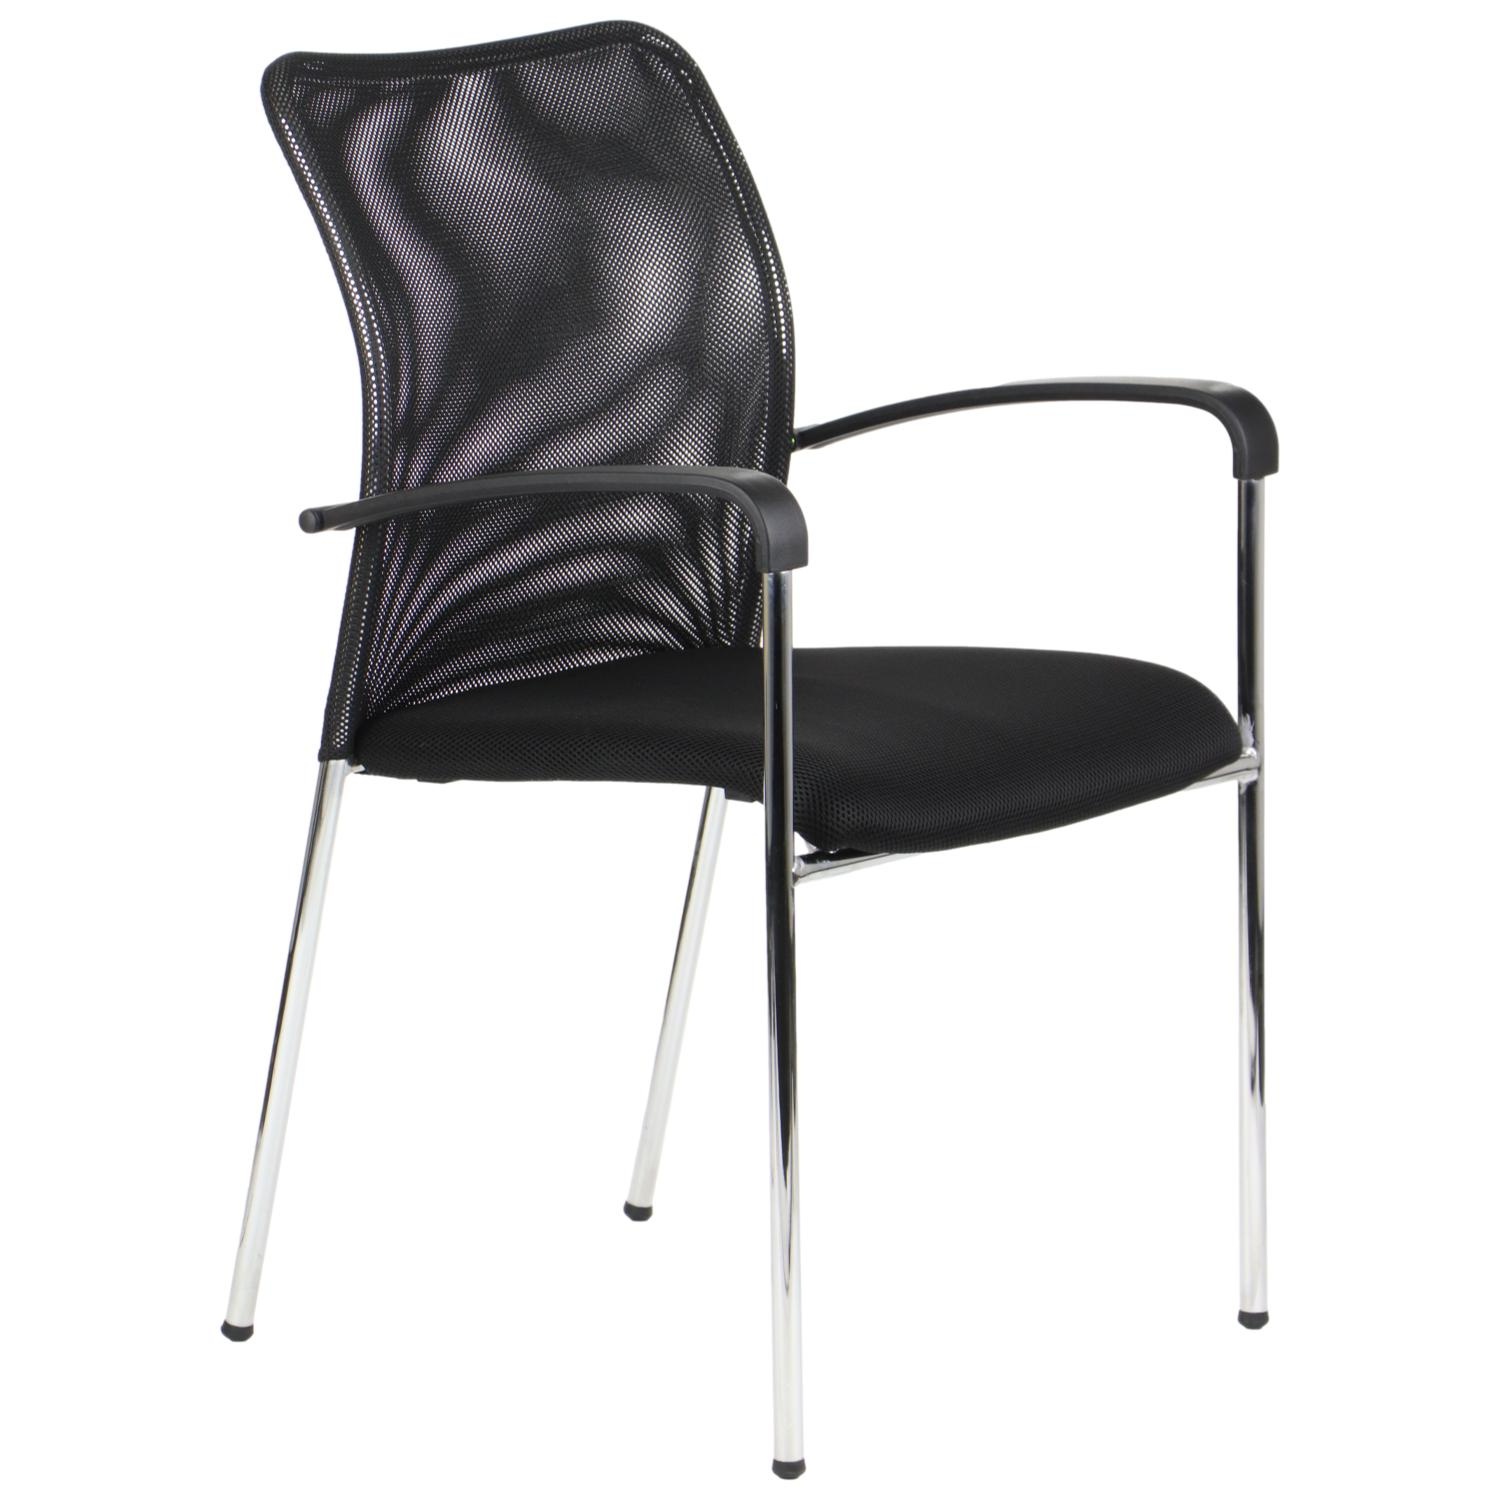 Stabilne krzesło z podłokietnikami . Nogi wykonane z rurki o grubości 18 mm. Oparcie z siatki, siedzisko tapicerowane tkaniną. Ważne : krzesło może się sztaplować.